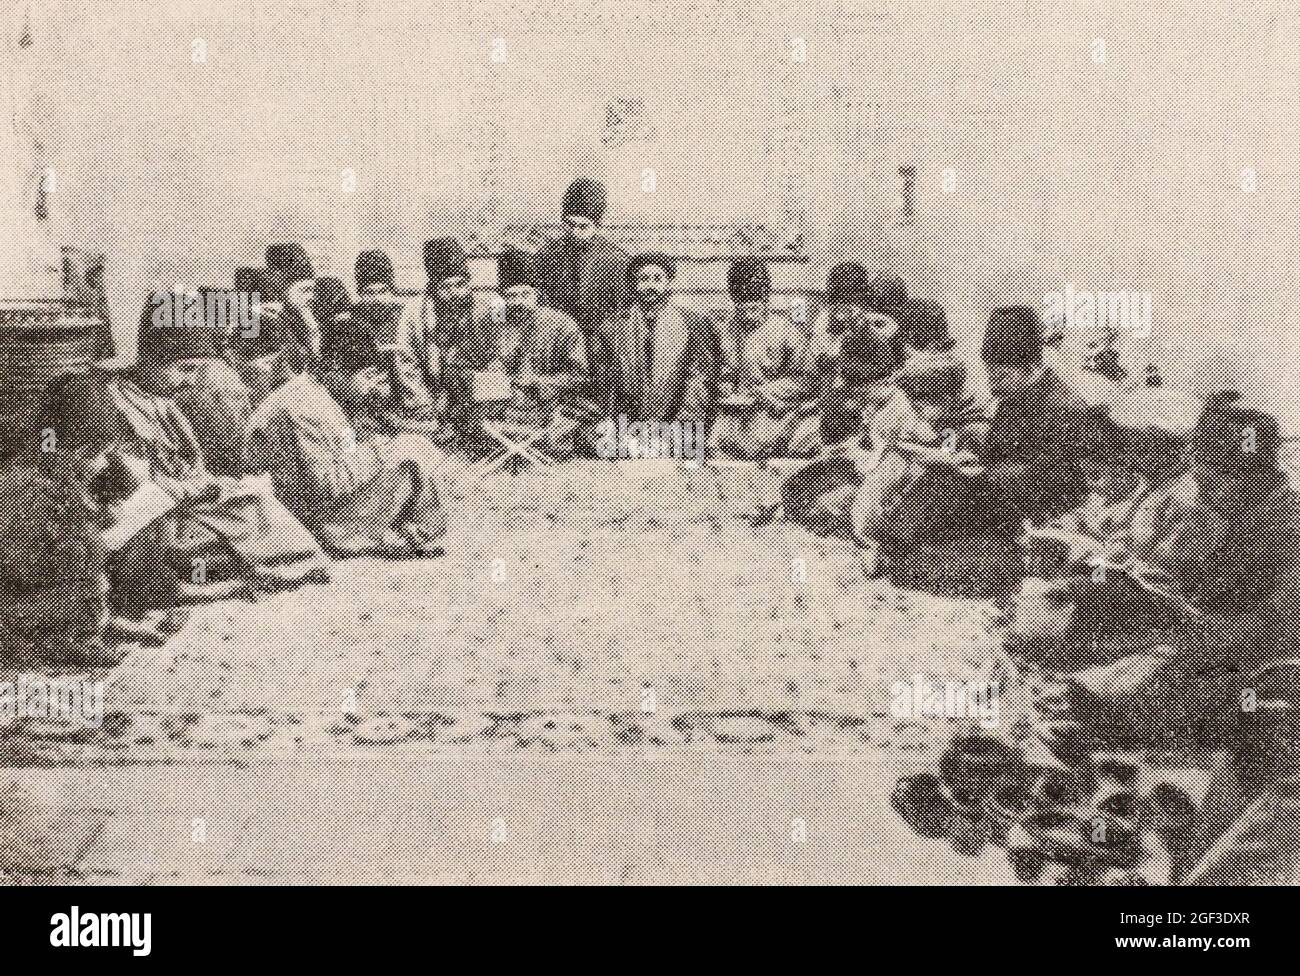 Bureau de l'un des ministères en Iran. Photo de la fin du XIXe siècle. Banque D'Images